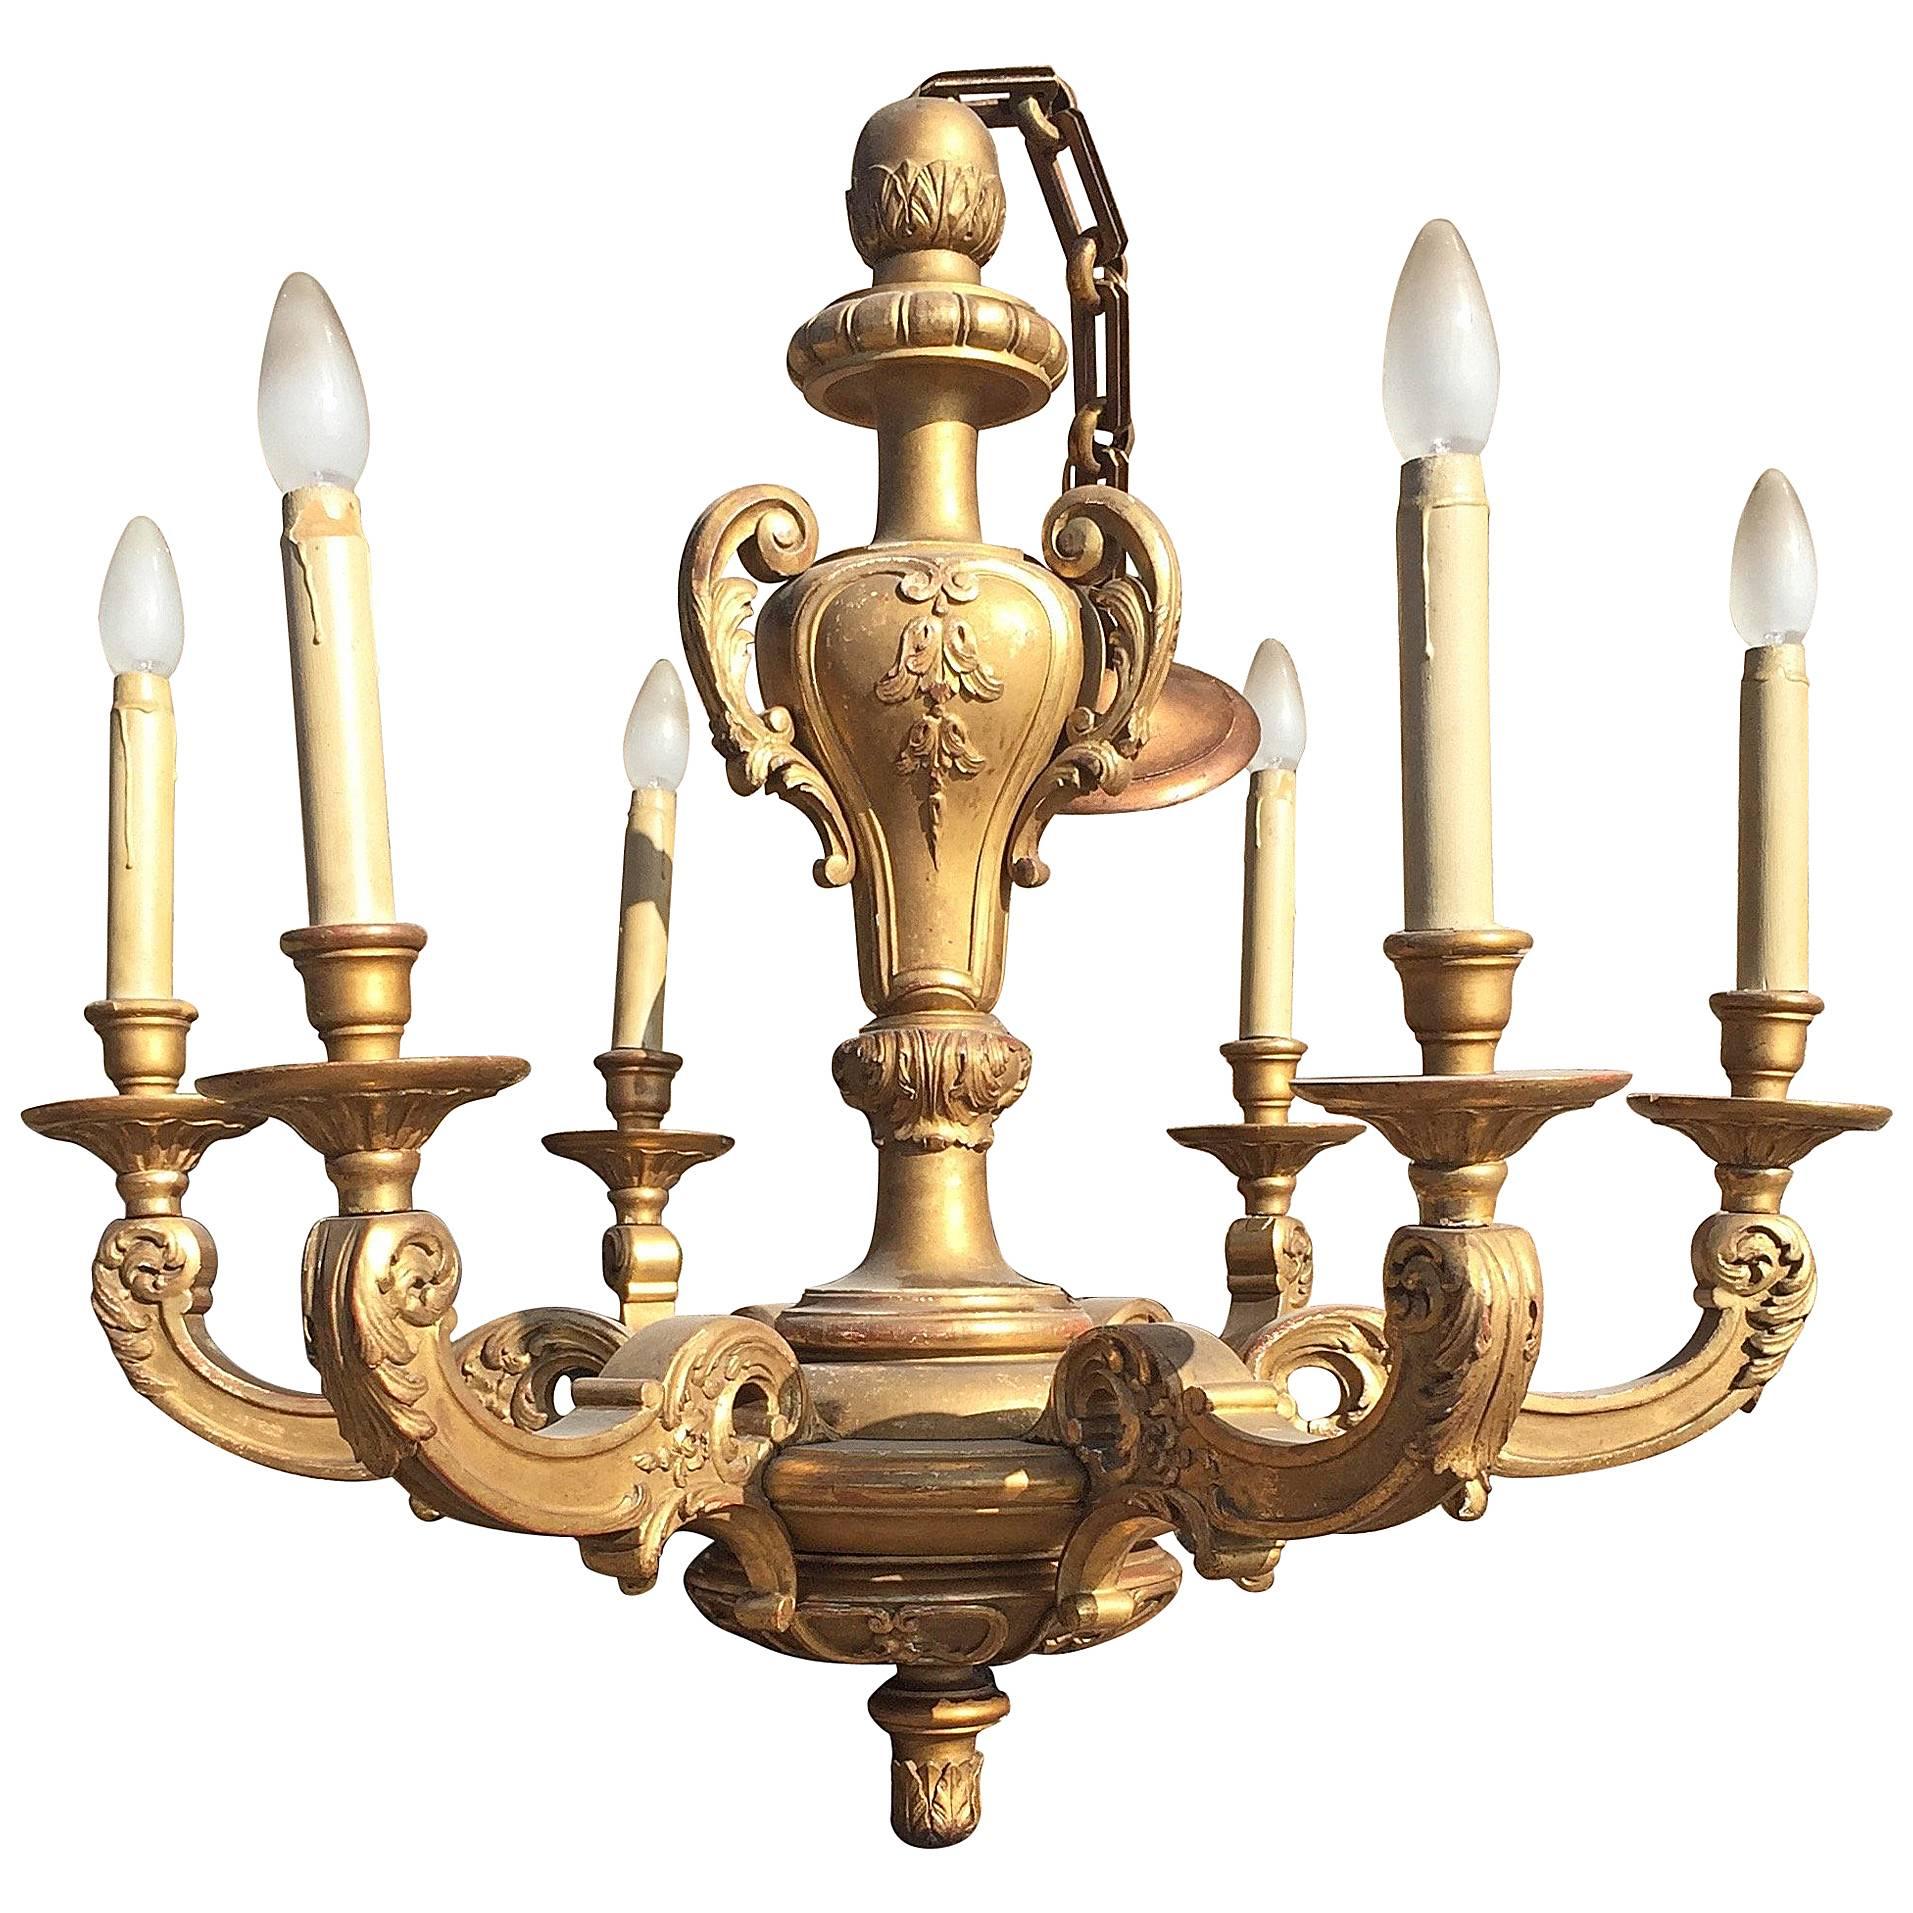 Early 1900s Art Nouveau Era Fine Quality Carved Gilt Chandelier Light Fixture